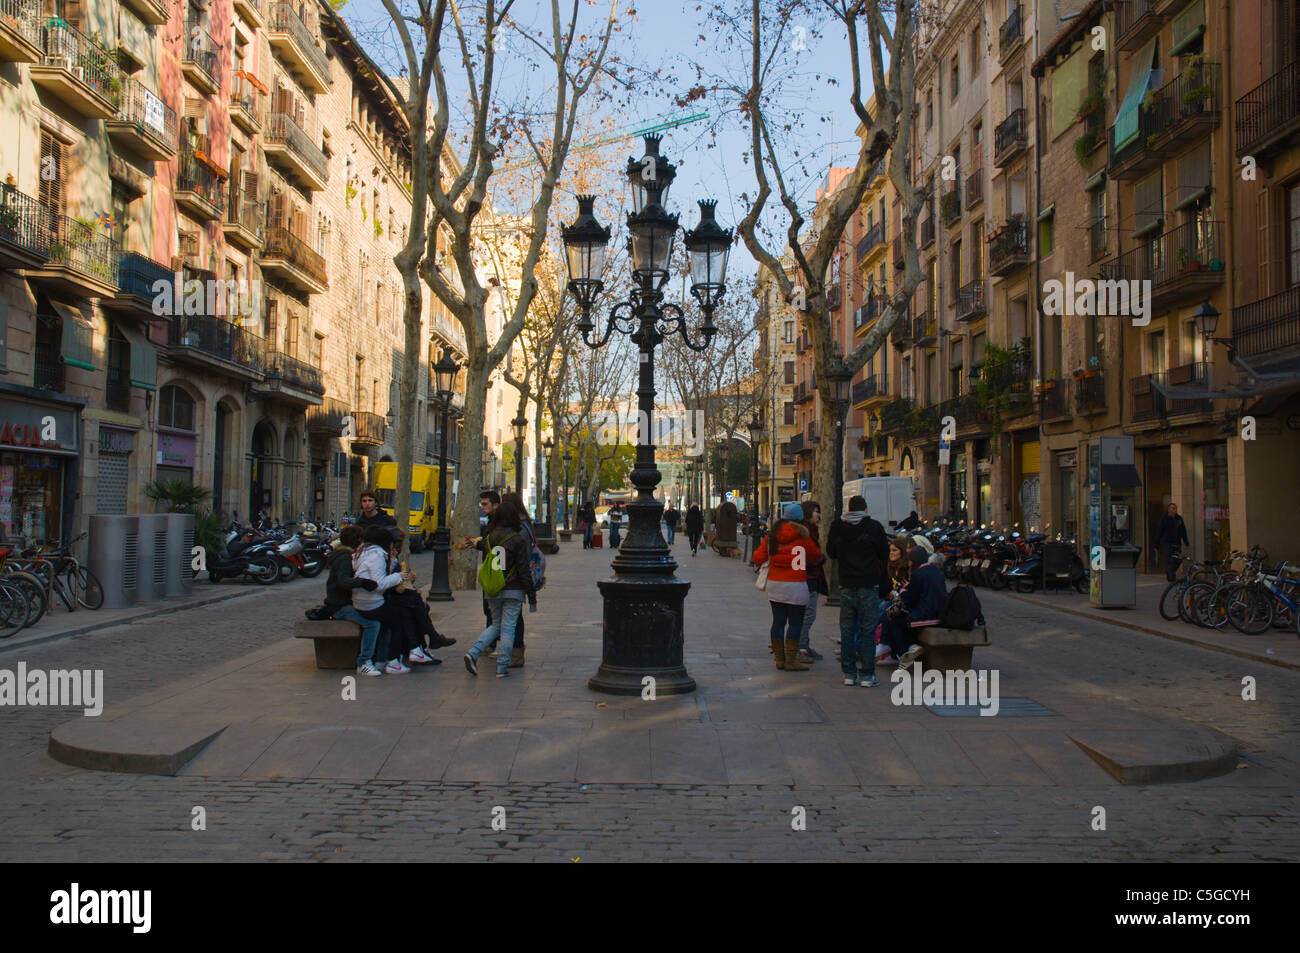 Passeig del Born el Born, le quartier vieille ville de Barcelone Catalogne Espagne Europe Banque D'Images